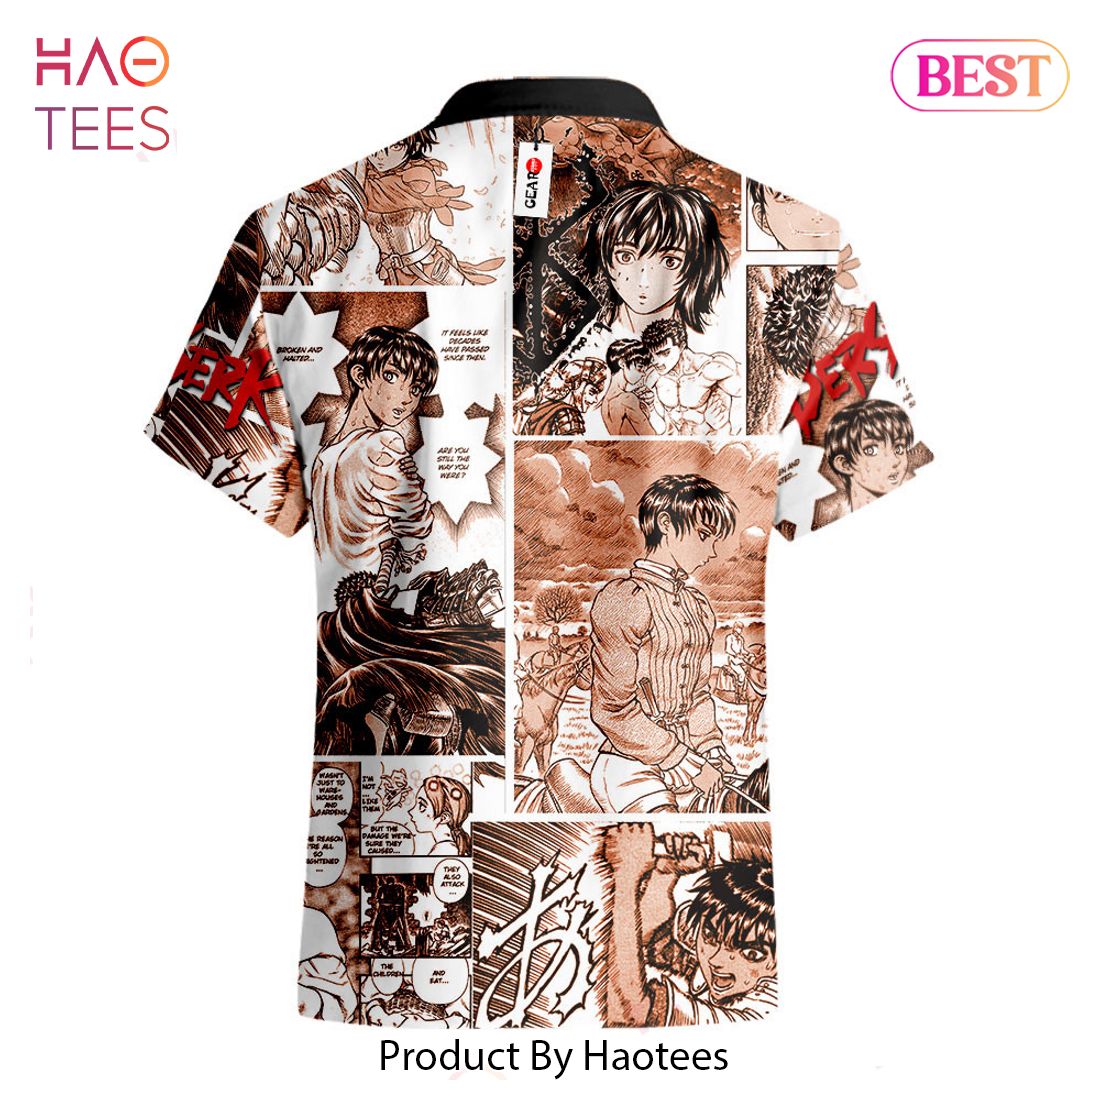 THE BEST Casca Hawaiian Shirts Berserk Custom Anime Clothes for Men Women